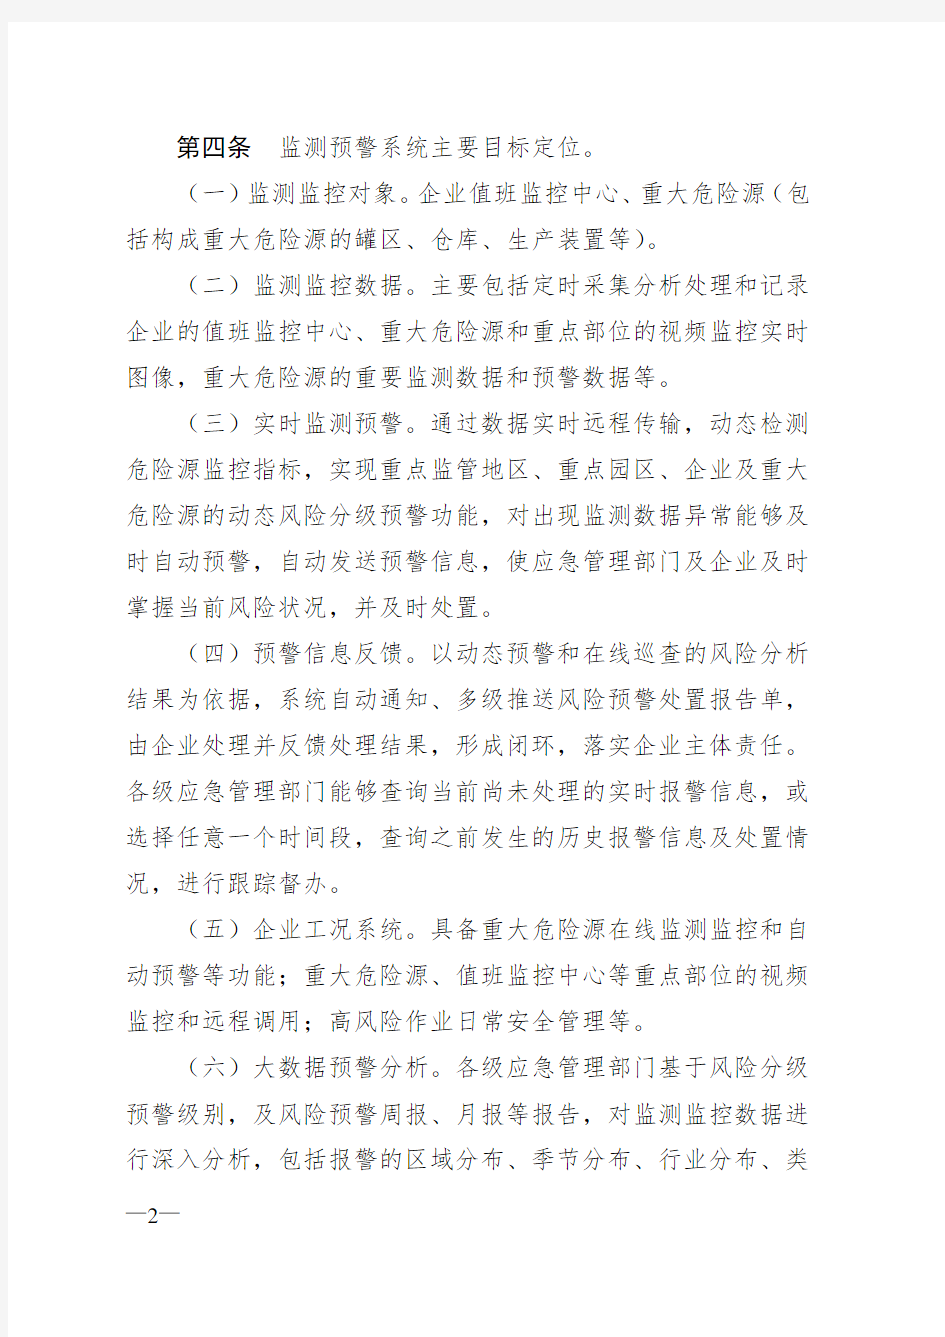 河北省安全生产风险网上监测预警管理规定(试行)